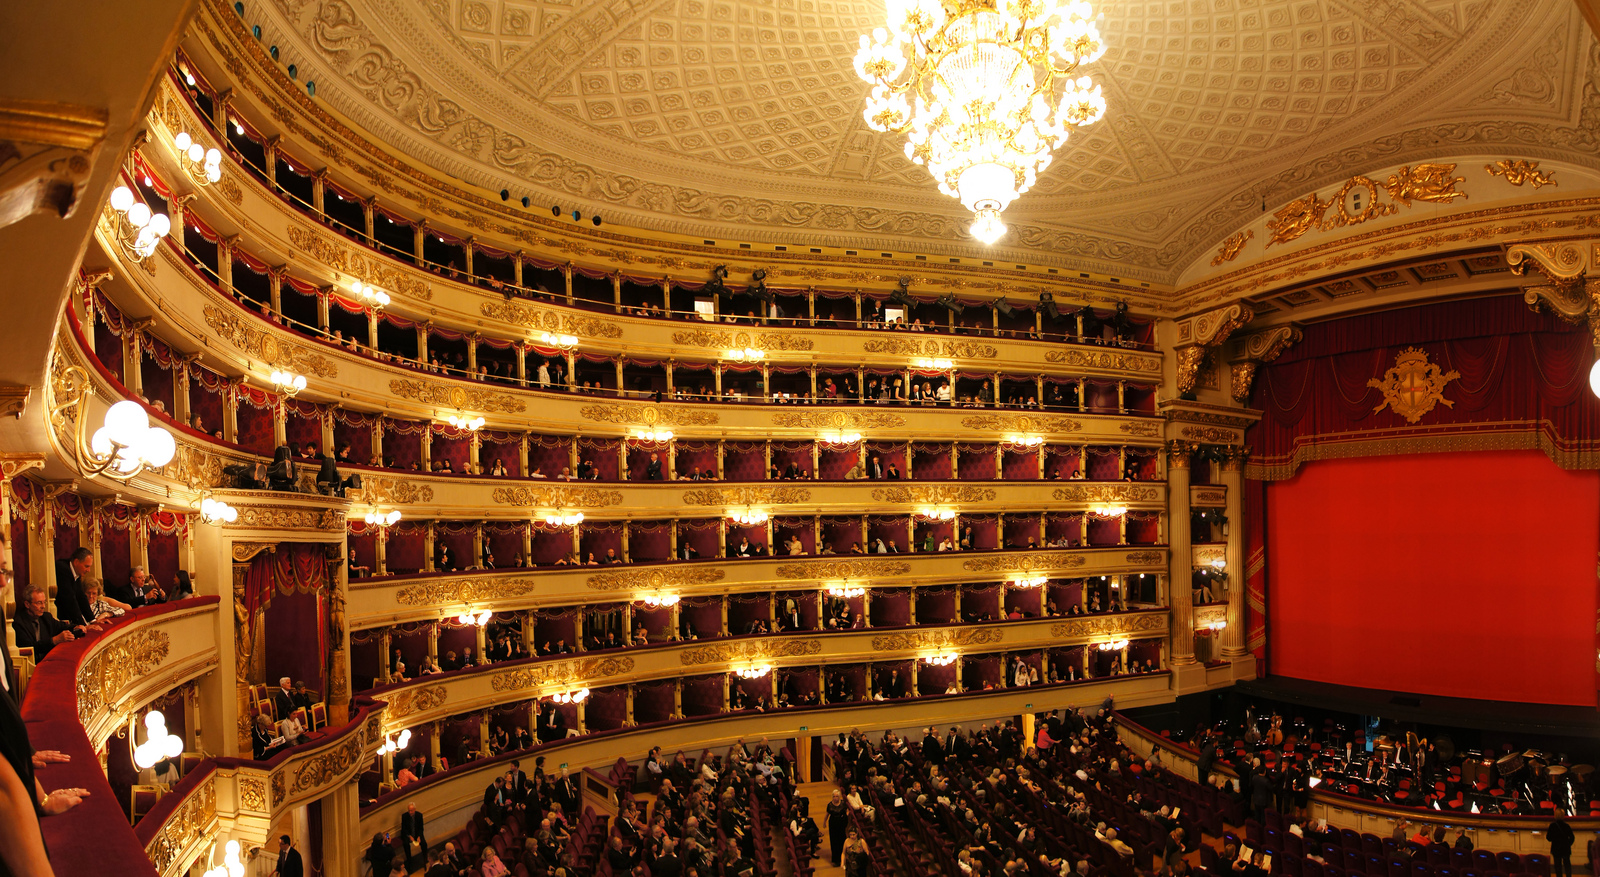 Teatro-la-Scala-filmax-opera